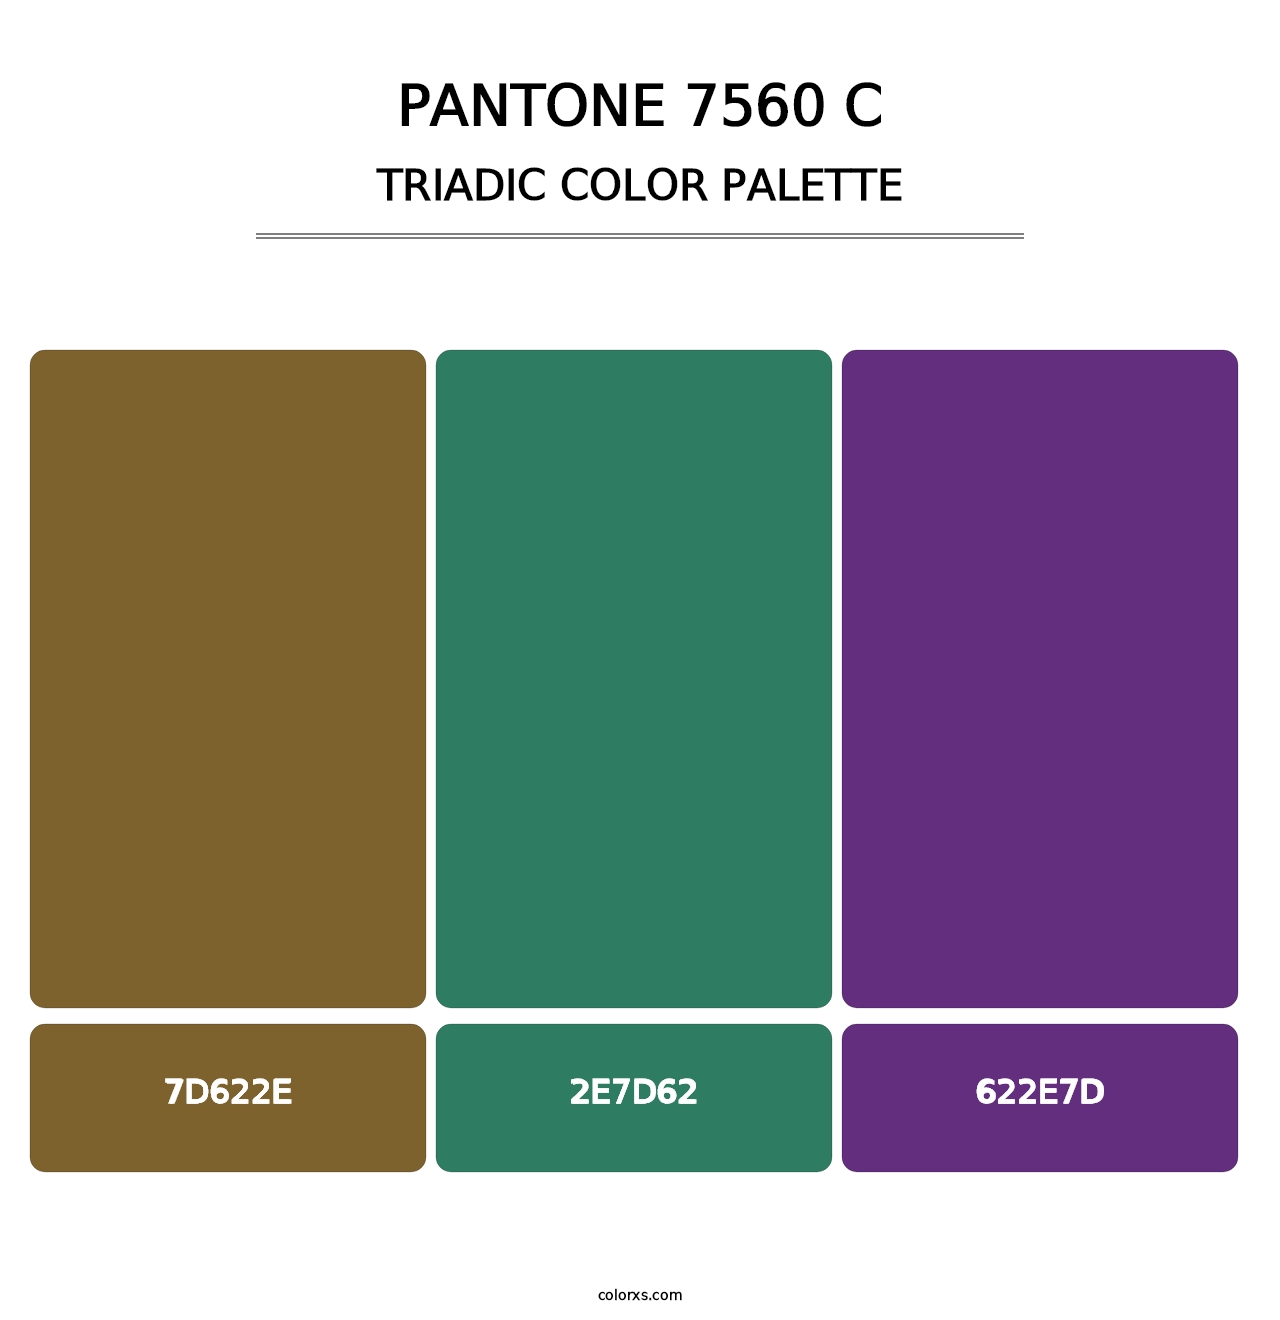 PANTONE 7560 C - Triadic Color Palette